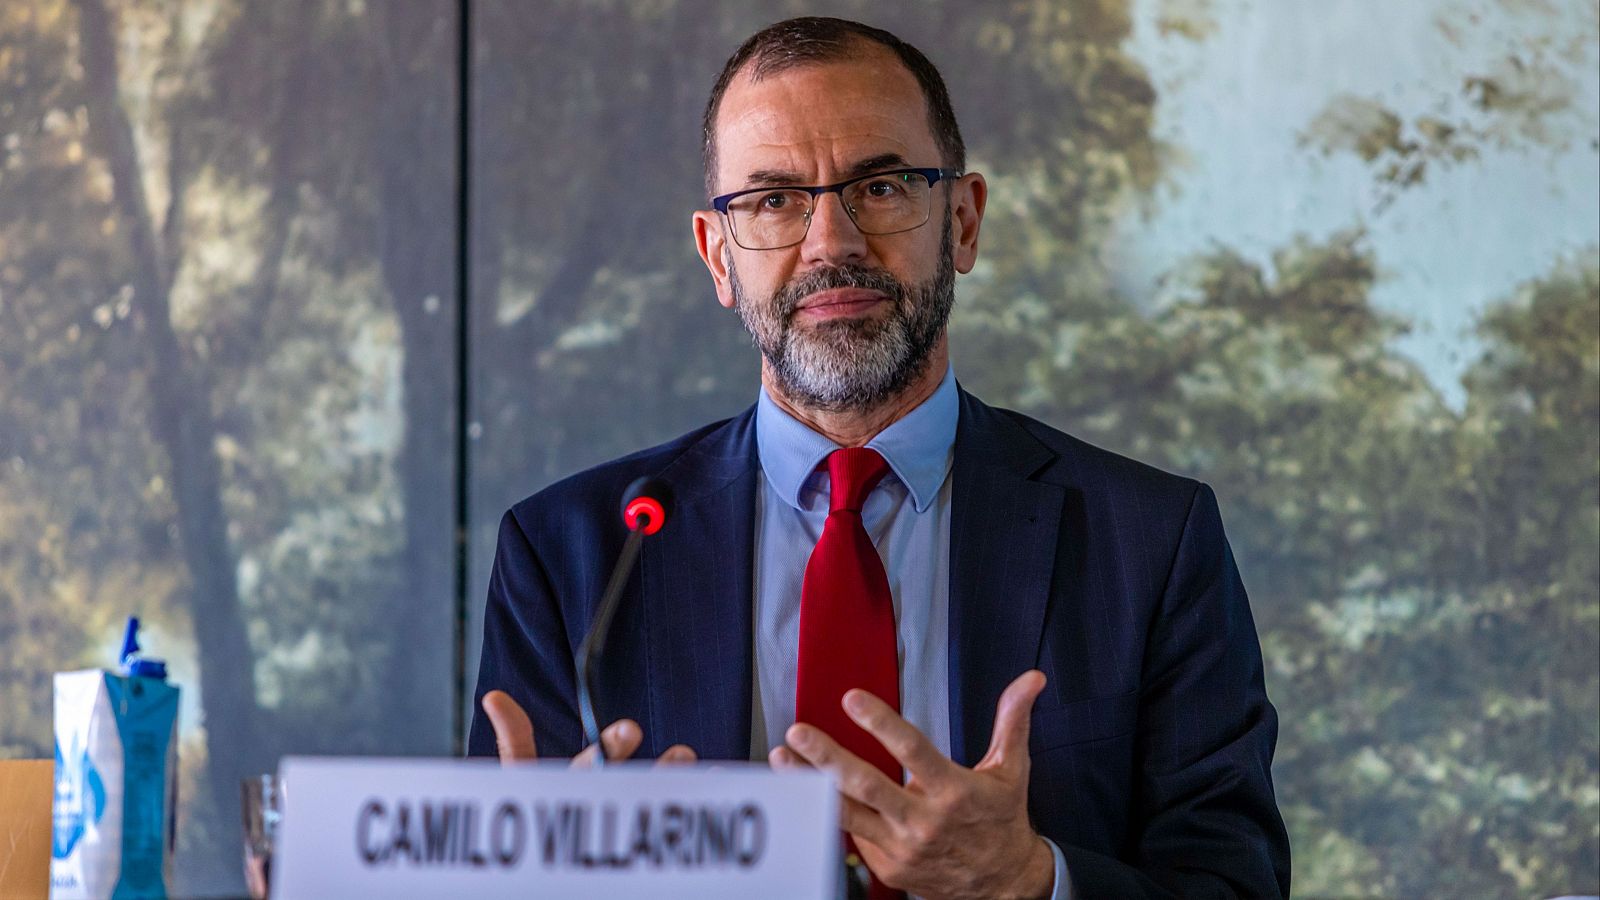 Camilo Villarino, nombrado por Felipe VI como nuevo jefe de la Casa del Rey